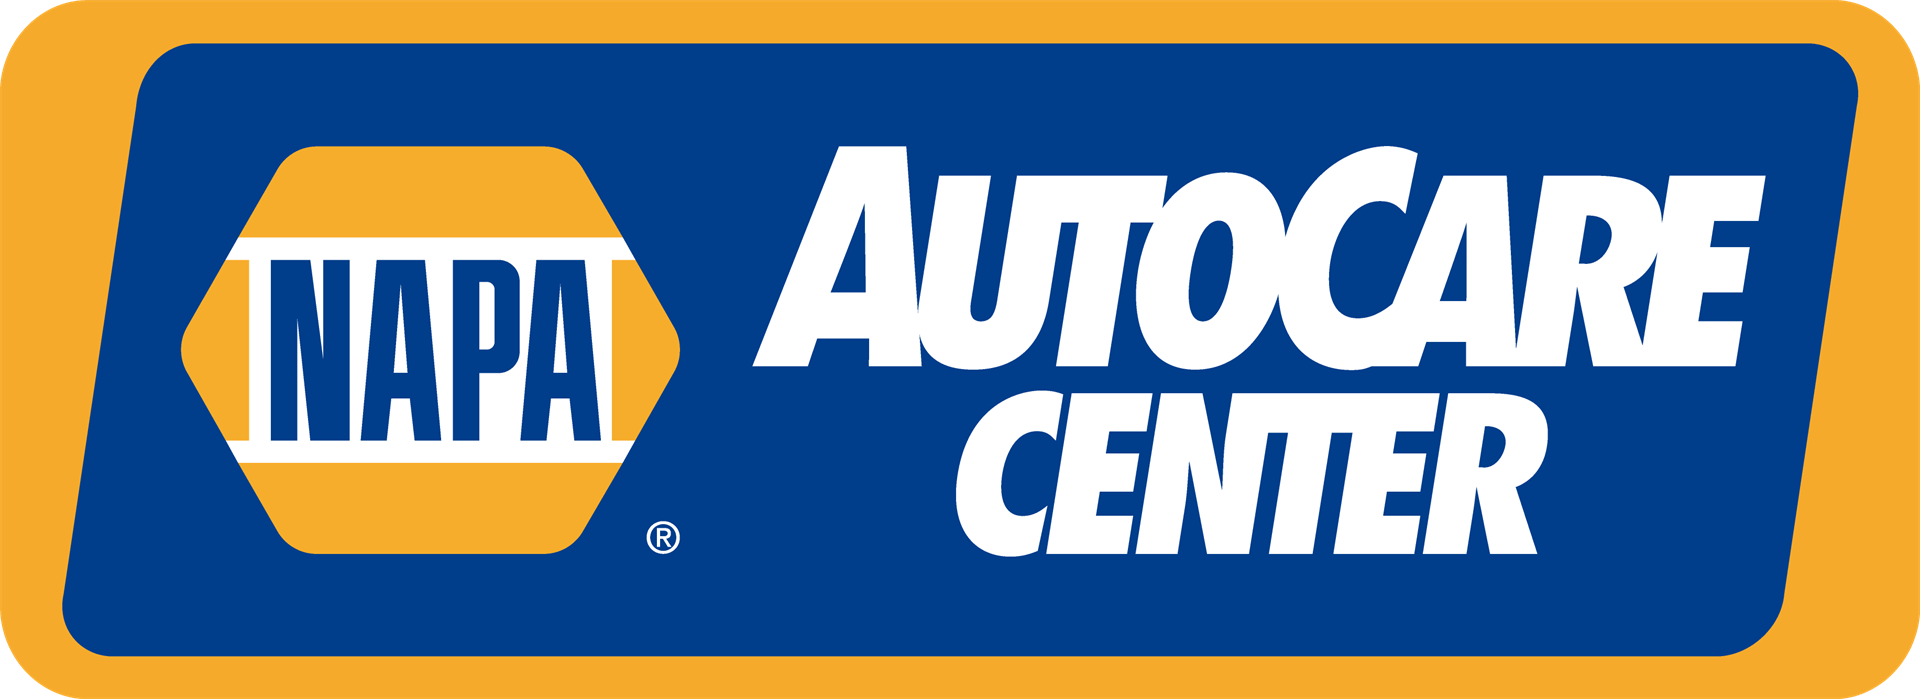 NAPA AutoCare Center Service Automotive Car Vehicle Repair Shop